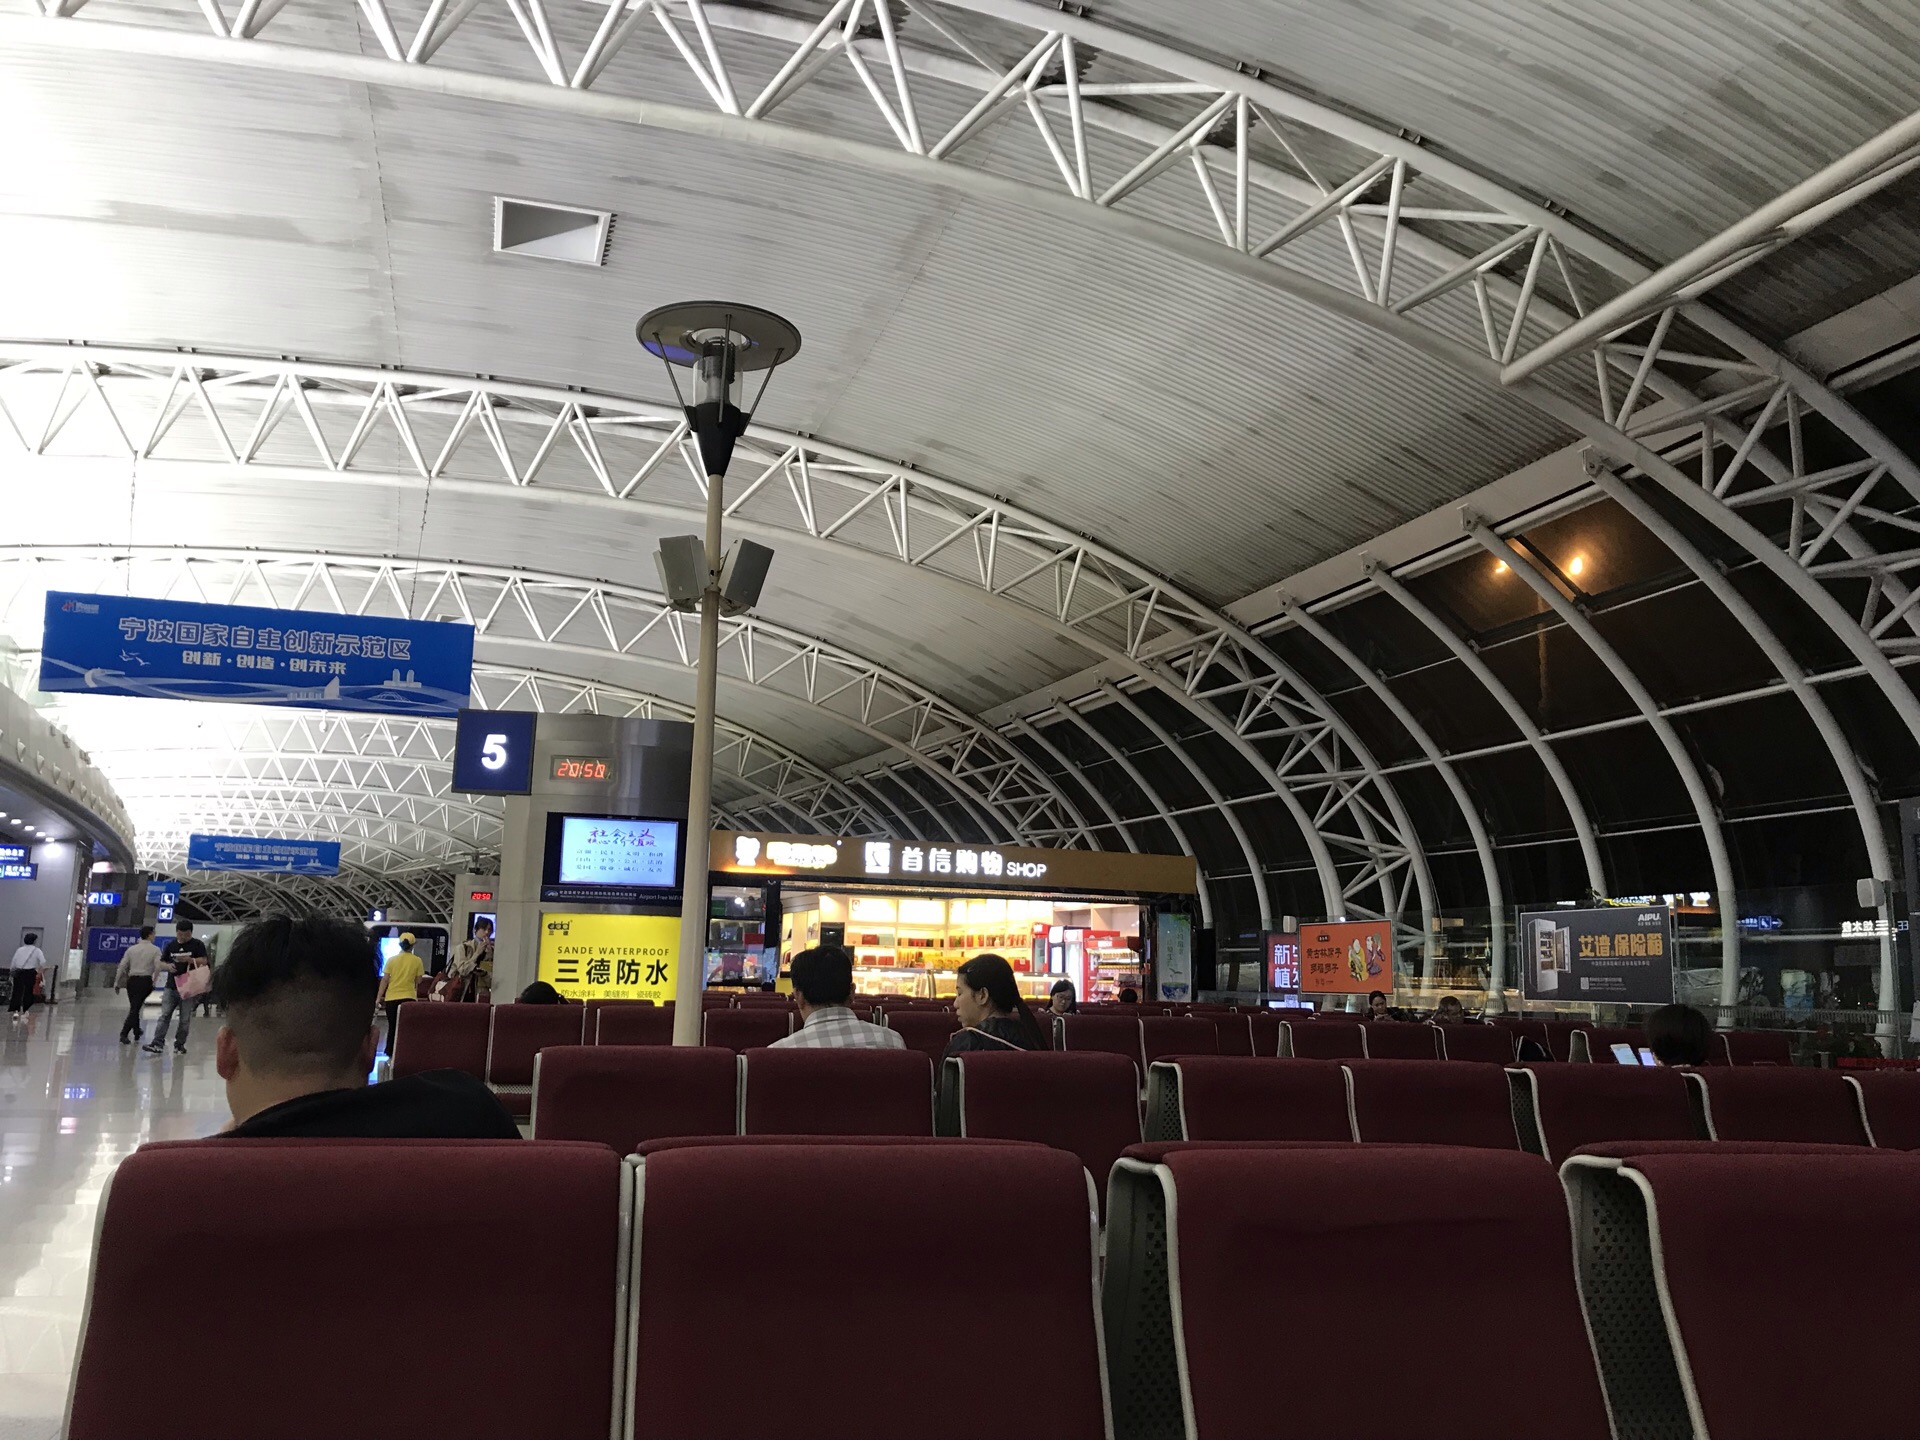 【携程攻略】栎社国际机场,个人还是很喜欢宁波这个城市的,机场虽然不